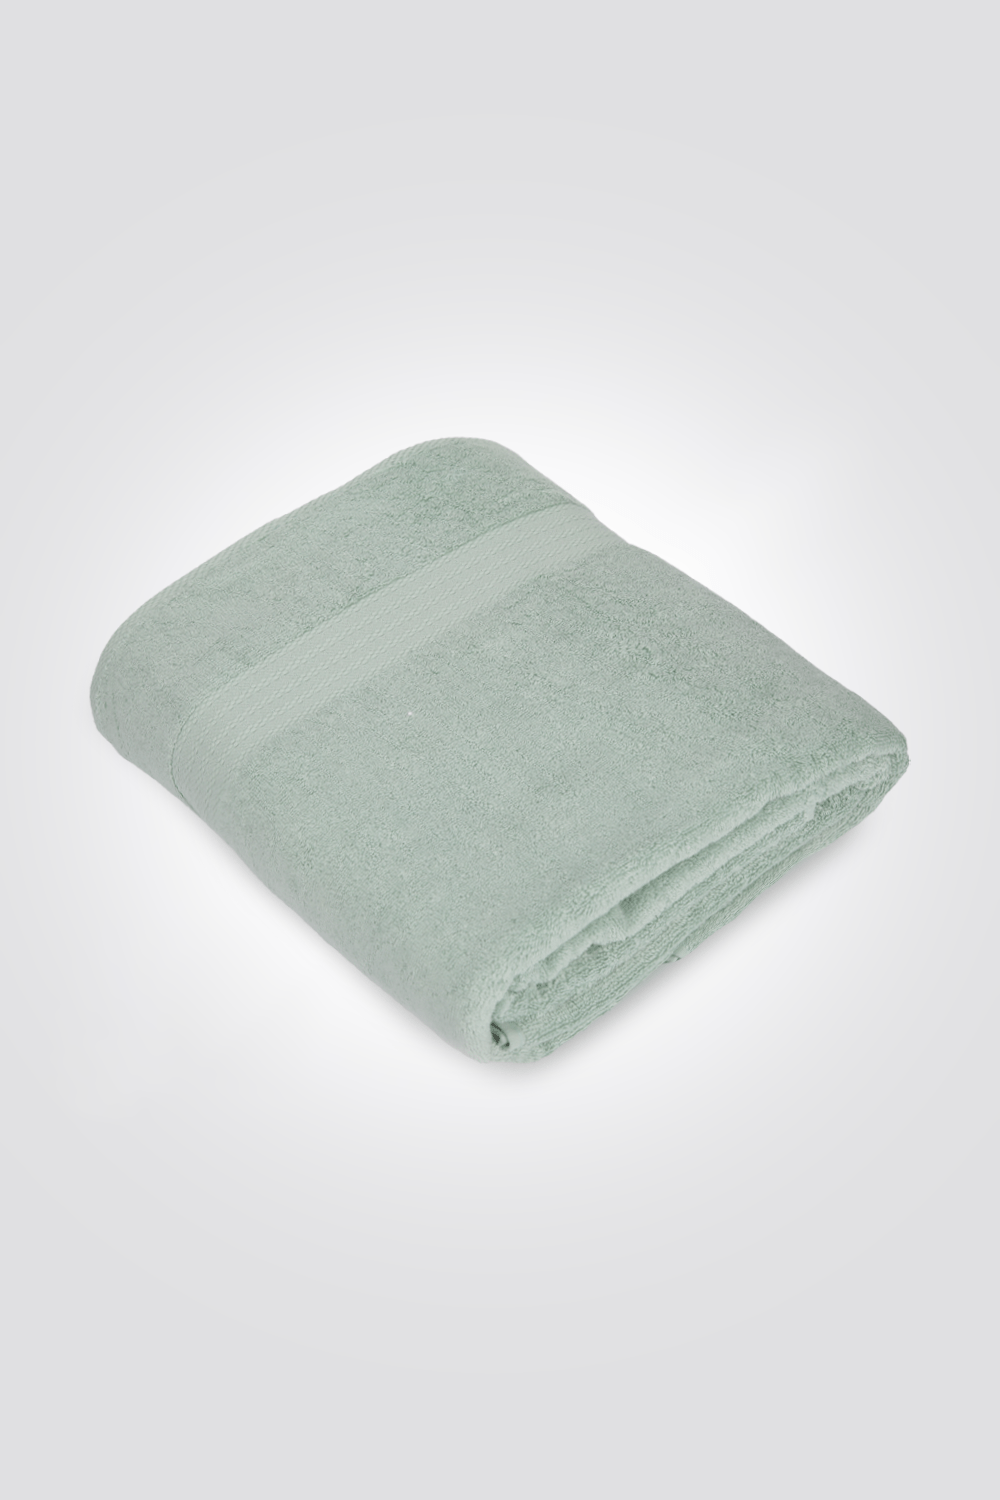 KENNETH COLE - מגבת גוף גדולה בצבע ירוק - MASHBIR//365